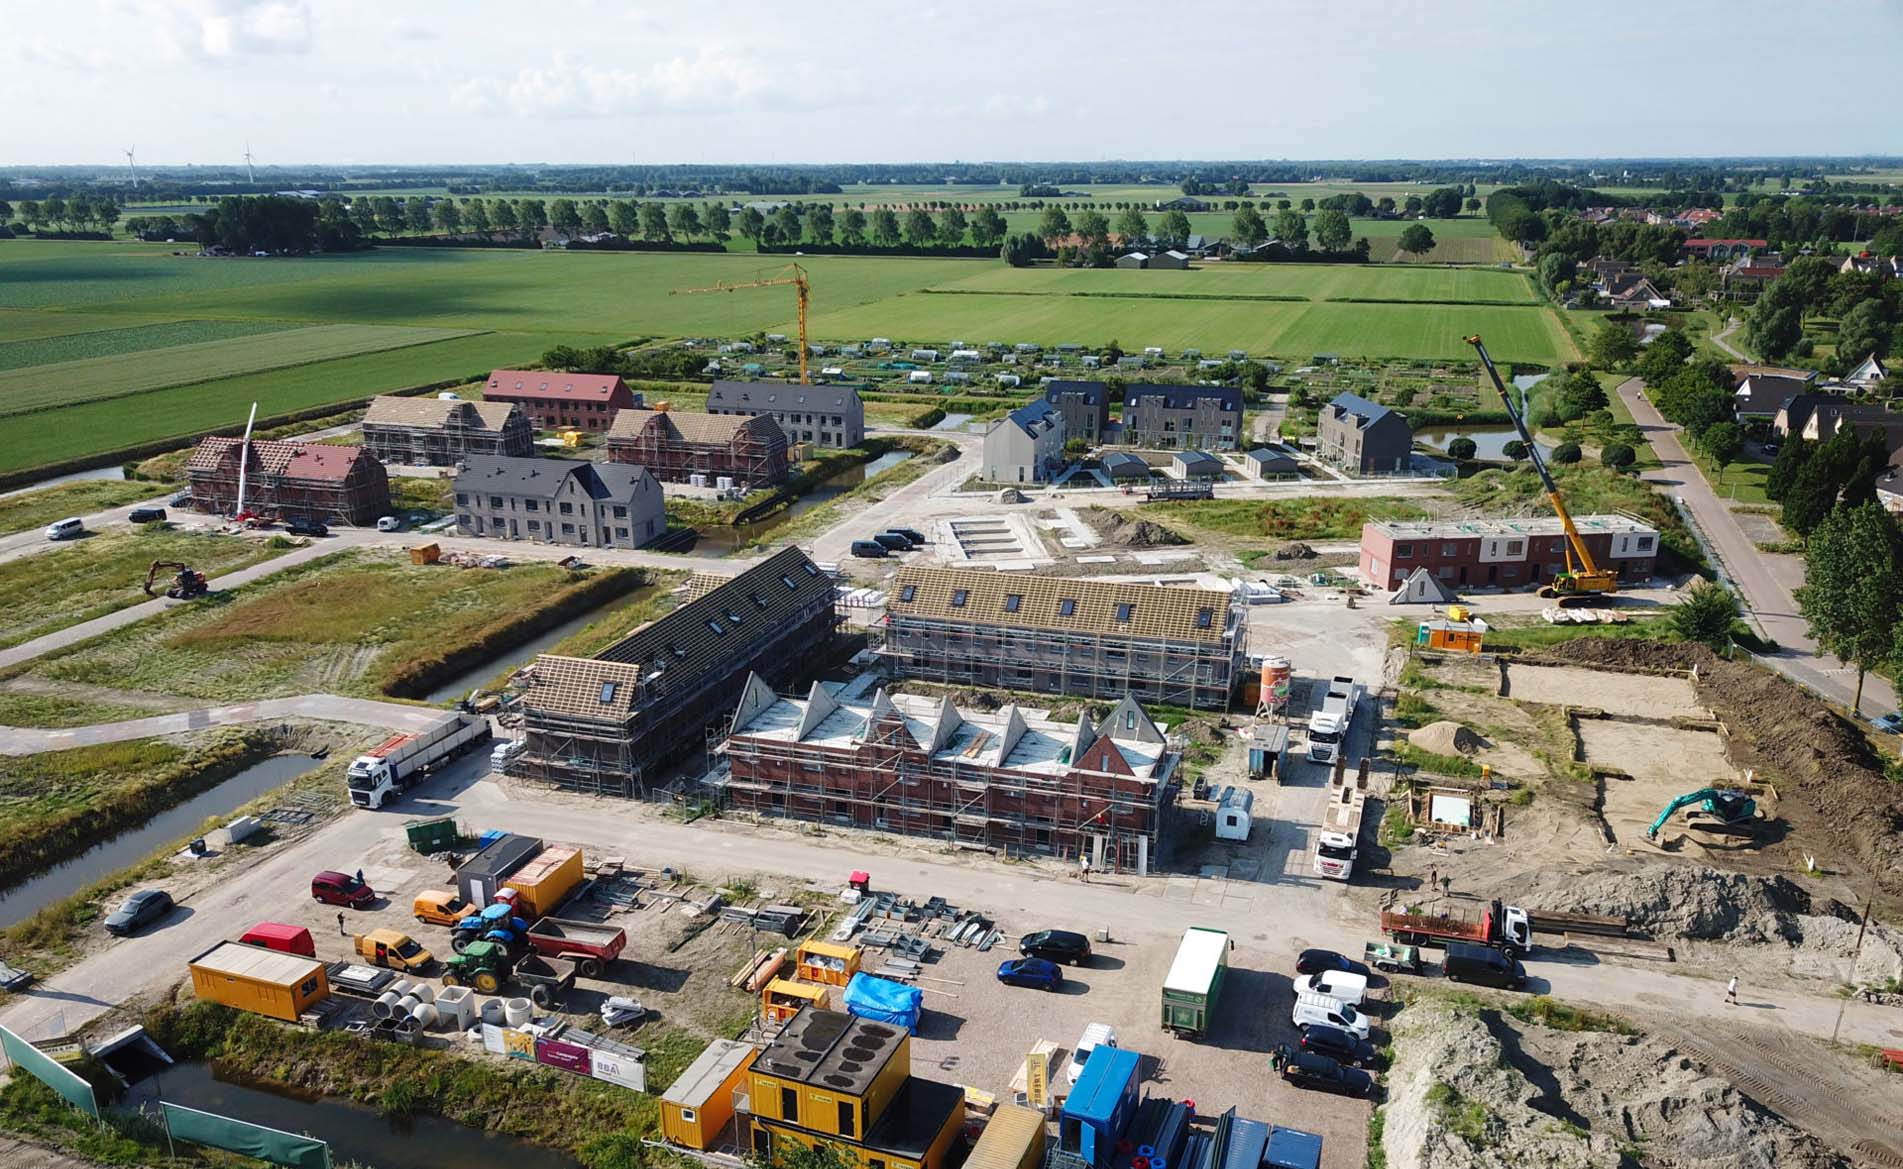 De 31 koopwoningen en 34 sociale huurwoningen van Trebbe in de wijk Landsheer verrijzen in een korte bouwtijd door een deels modulair bouwsysteem toe te passen. De wijk in wording is prachtig in beeld gebracht.